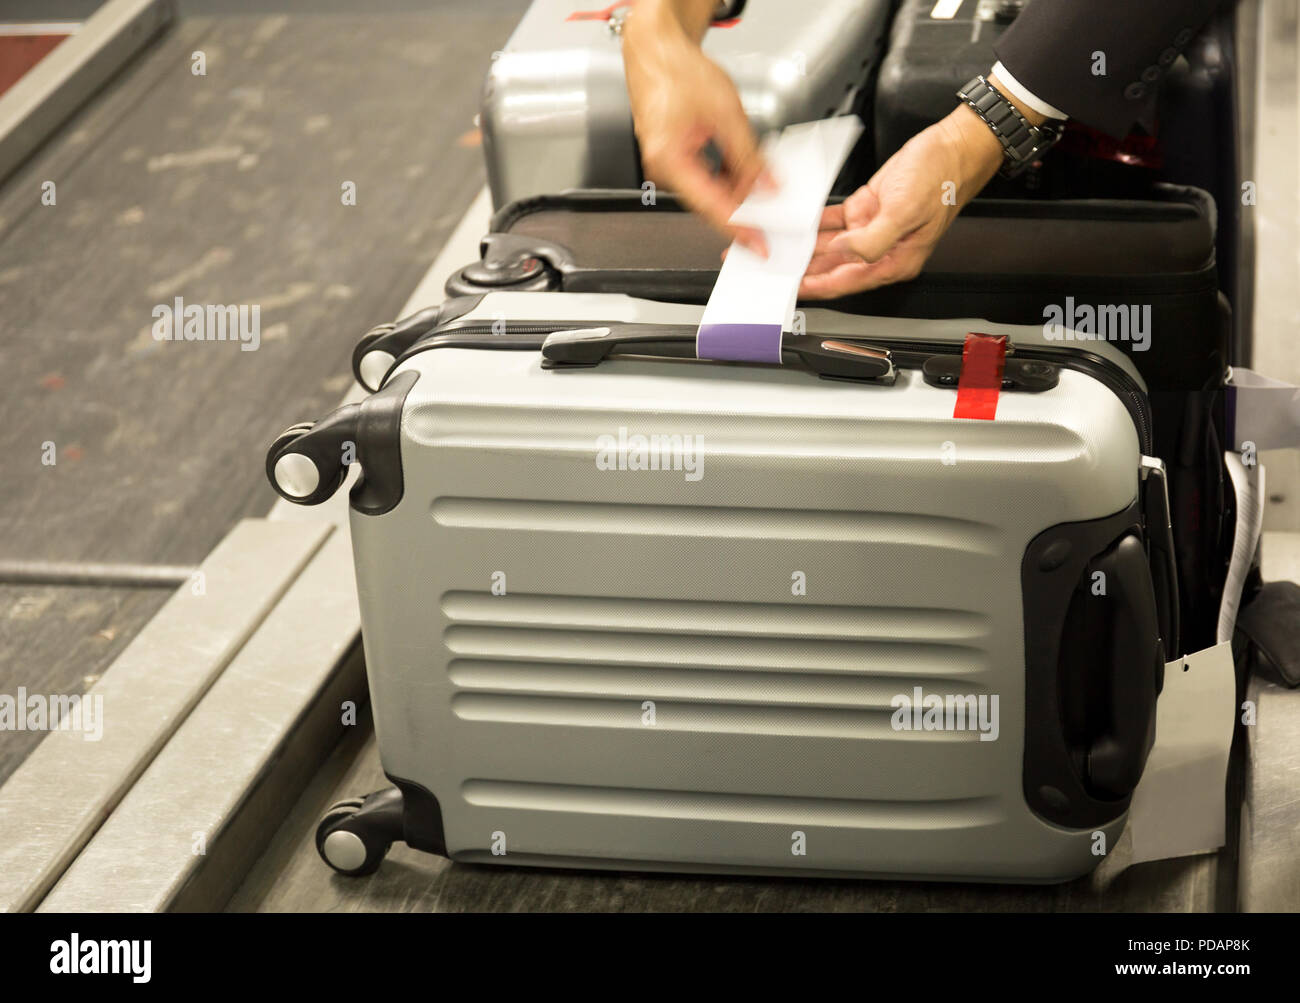 Check-in Mitarbeiter fügt einen Kofferanhänger, Koffer der Passagiere am  Flughafen Stockfotografie - Alamy